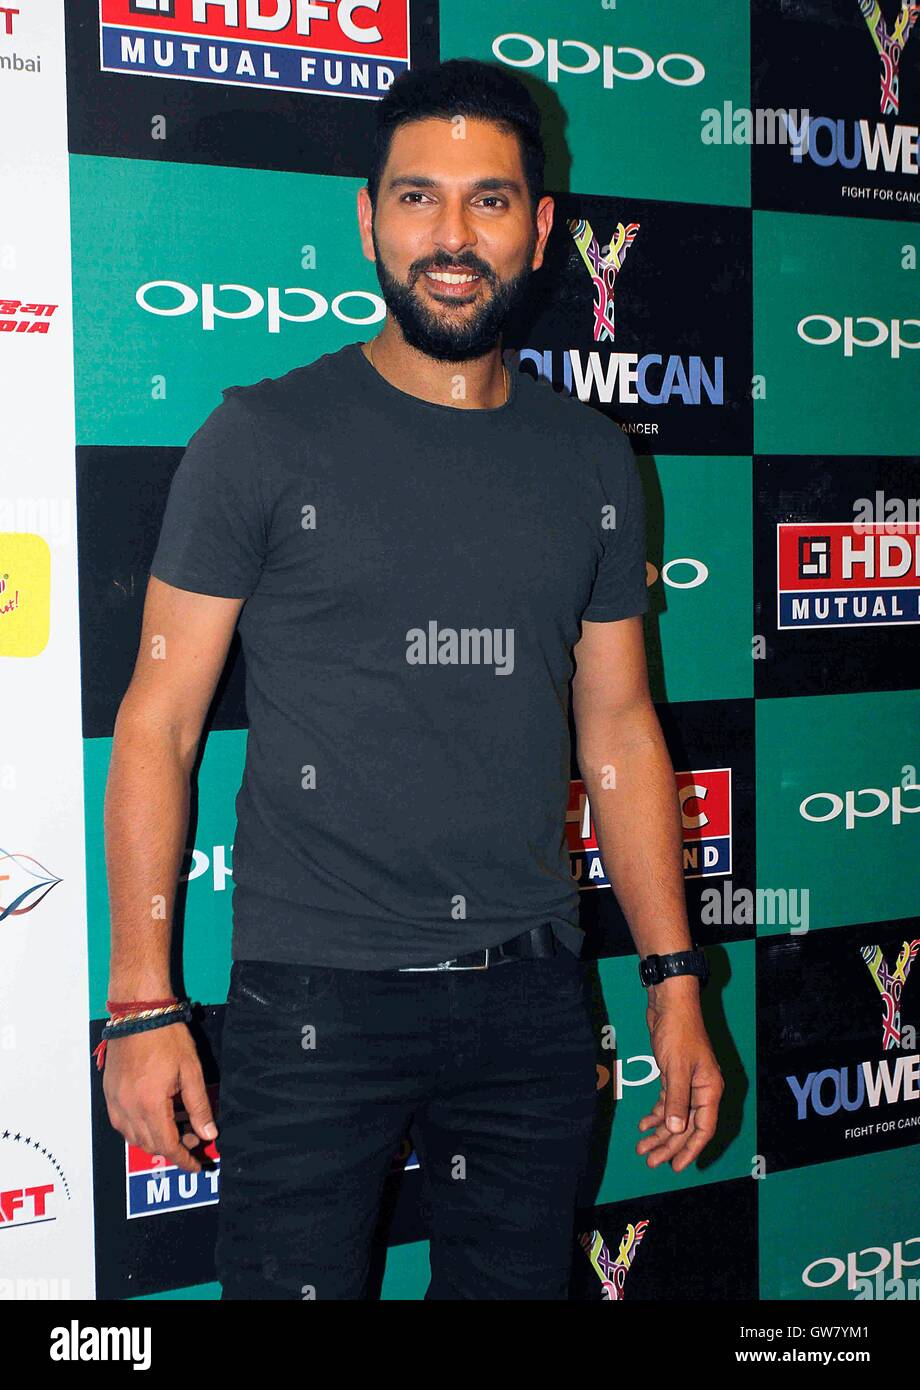 Indiano giocatore di cricket Yuvraj Singh lancio del marchio di abbigliamento YWC progettato da designer di moda Shantanu e Nikhil, in Mumbai Foto Stock